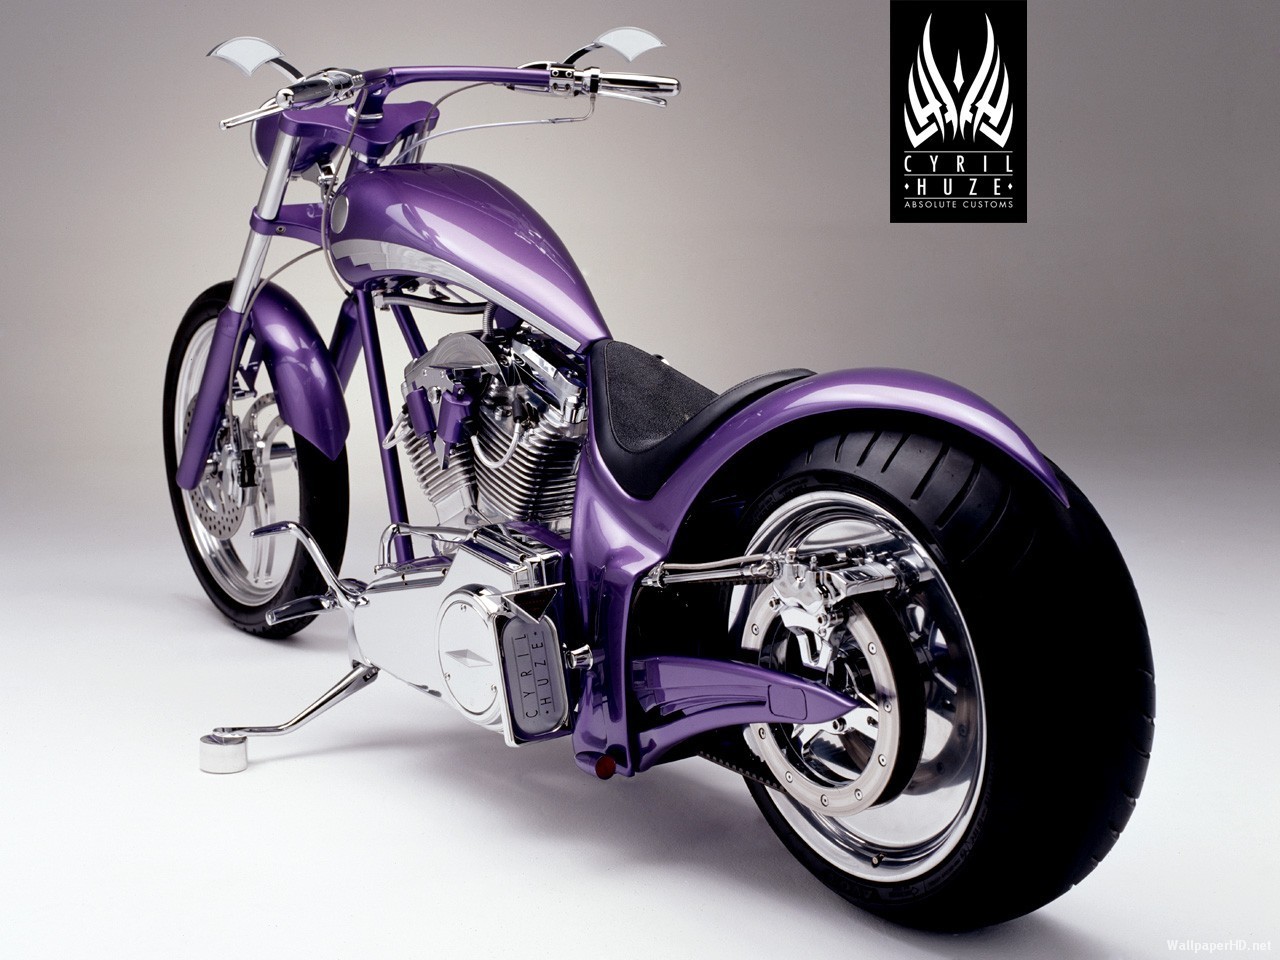 General 1280x960 motorcycle vehicle purple Purple Motorcycles